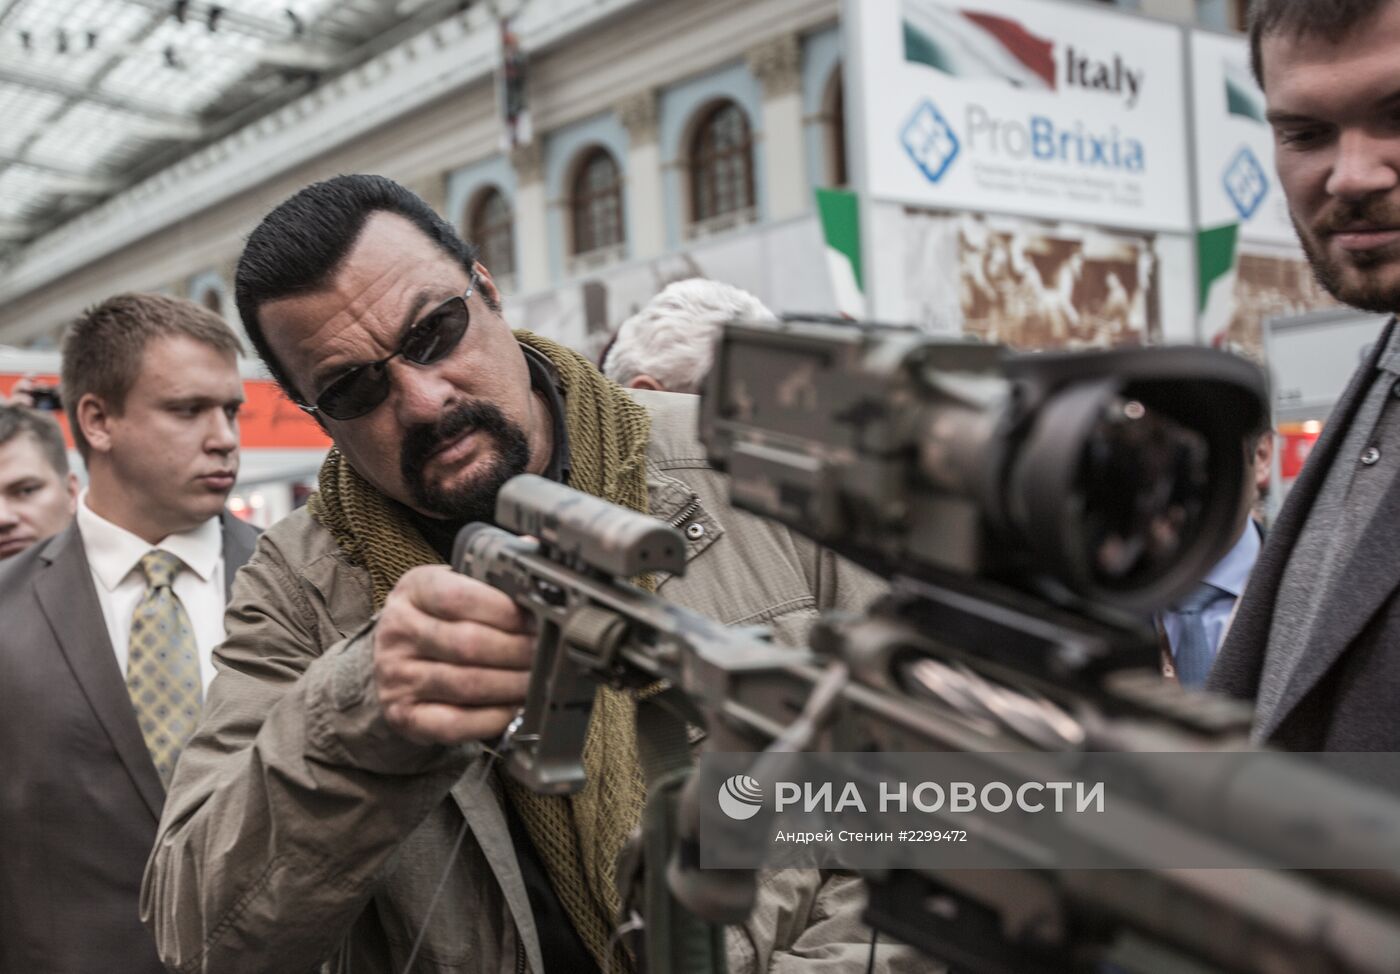 Актер Стивен Сигал посетил выставку "Оружие и охота" в Москве